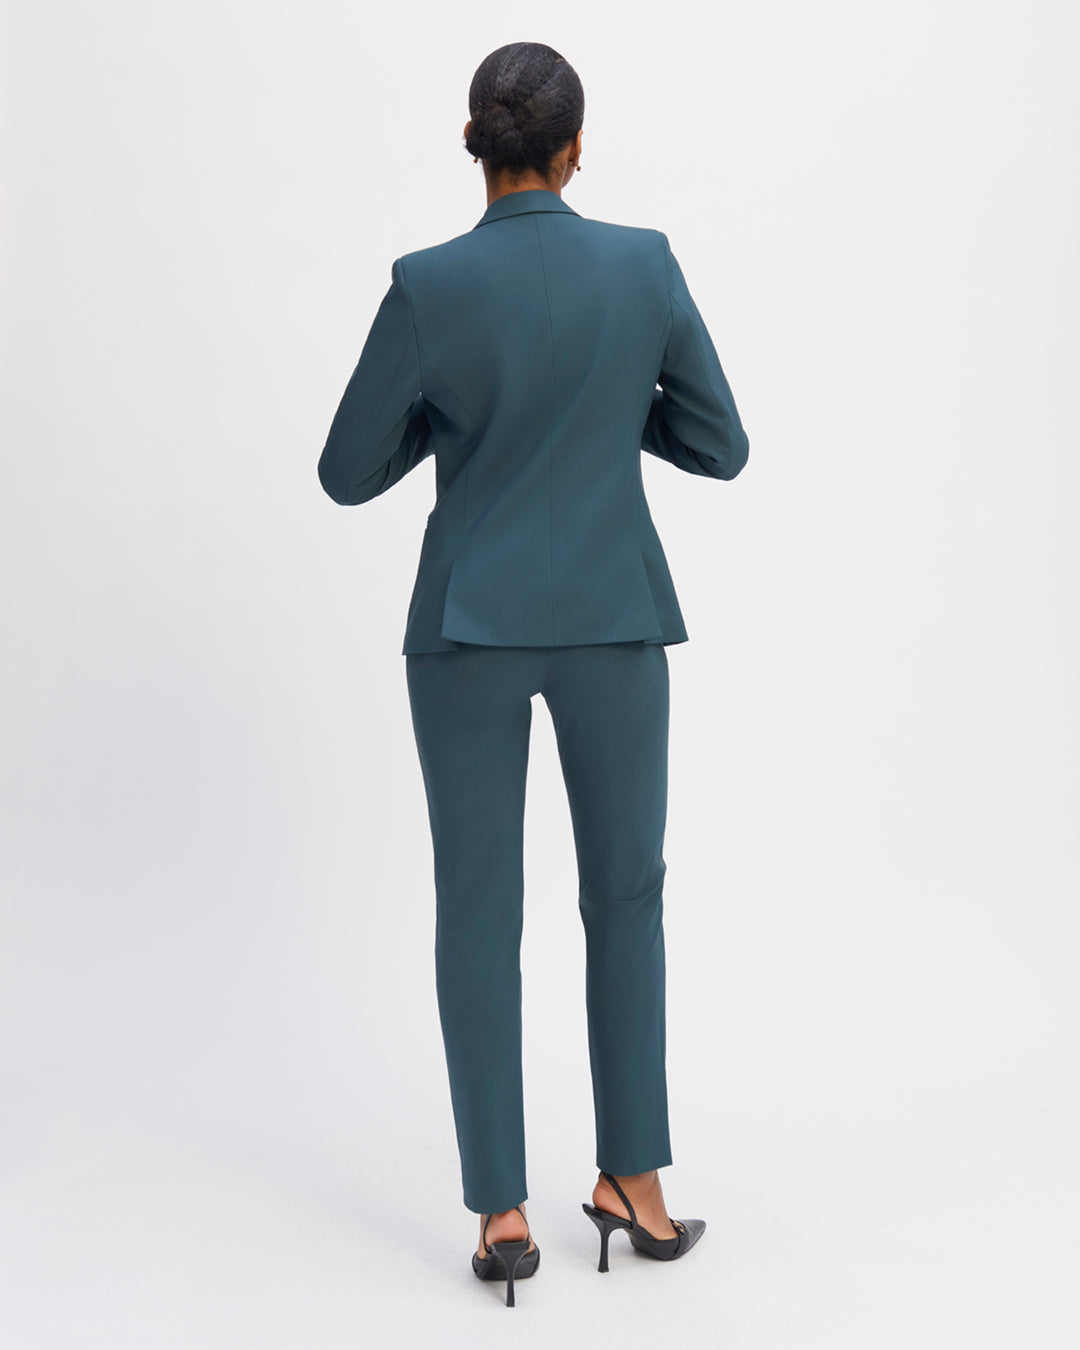 Veste-tailleur-blazer-verte-coupe-cintrée-col-tailleur-longueur-sous-les-fesses-deux-poches-passepoilées-deux-poches-intérieures-entièrement-doublée-17H10-tailleurs-pour-femme-paris-